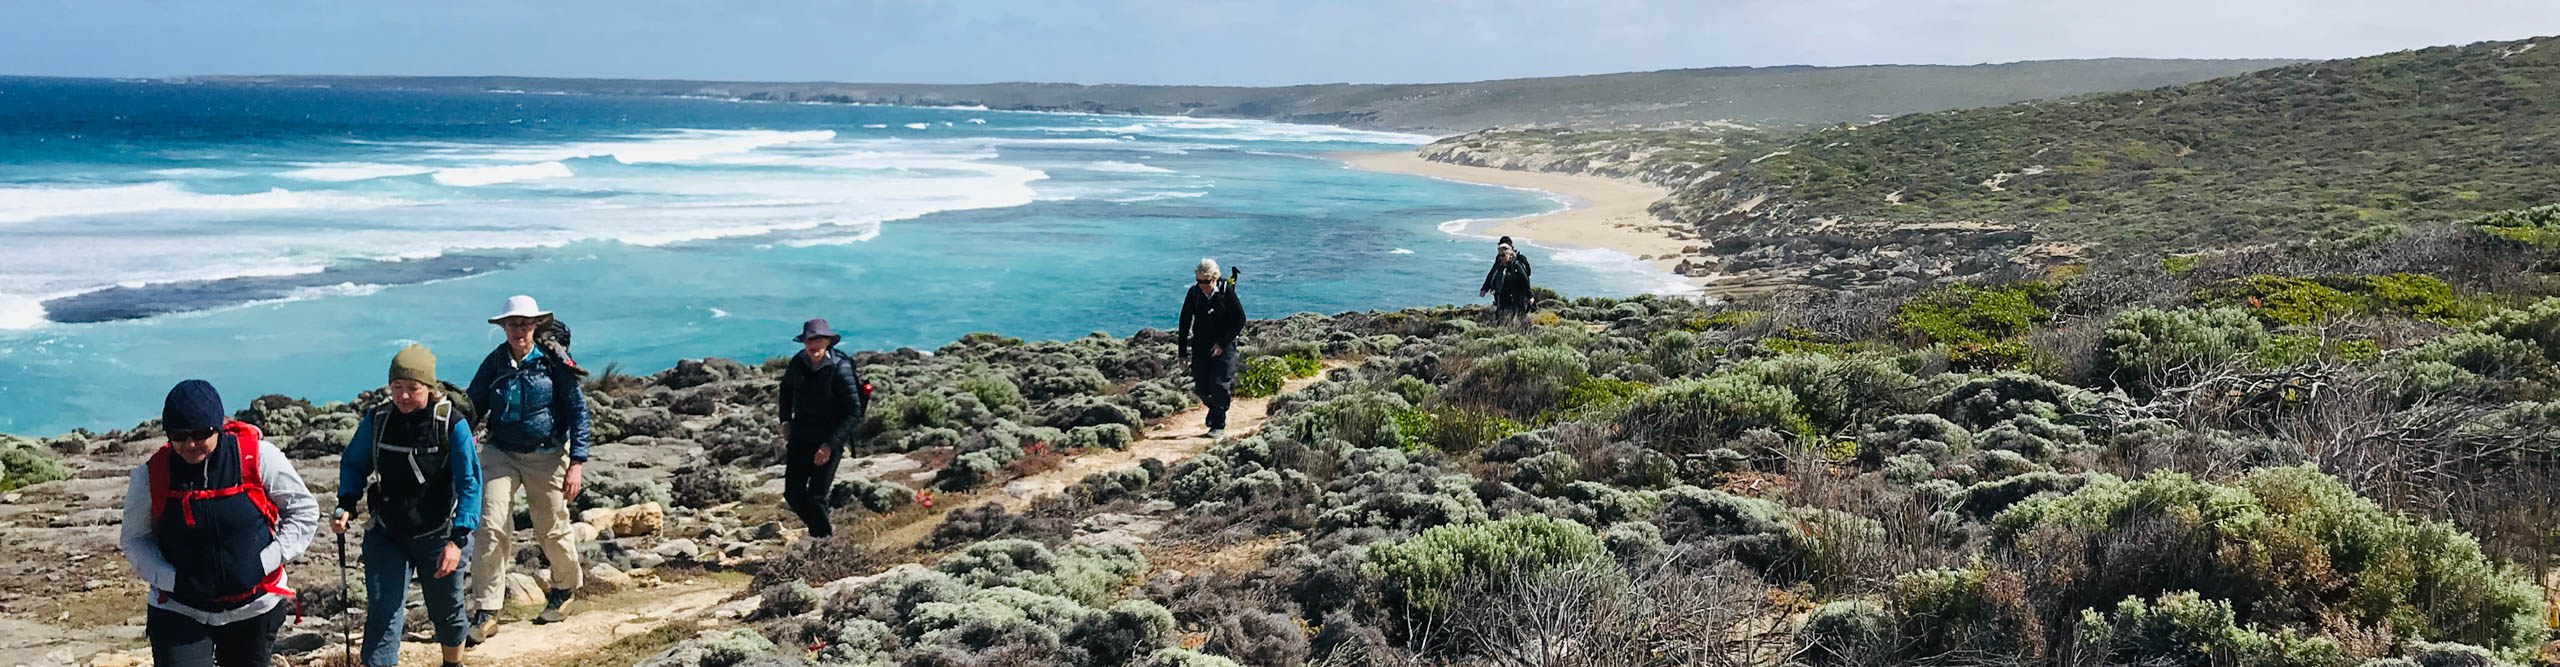 Hikers near the beach on Kangaroo Island on a clear sunny day, Australia